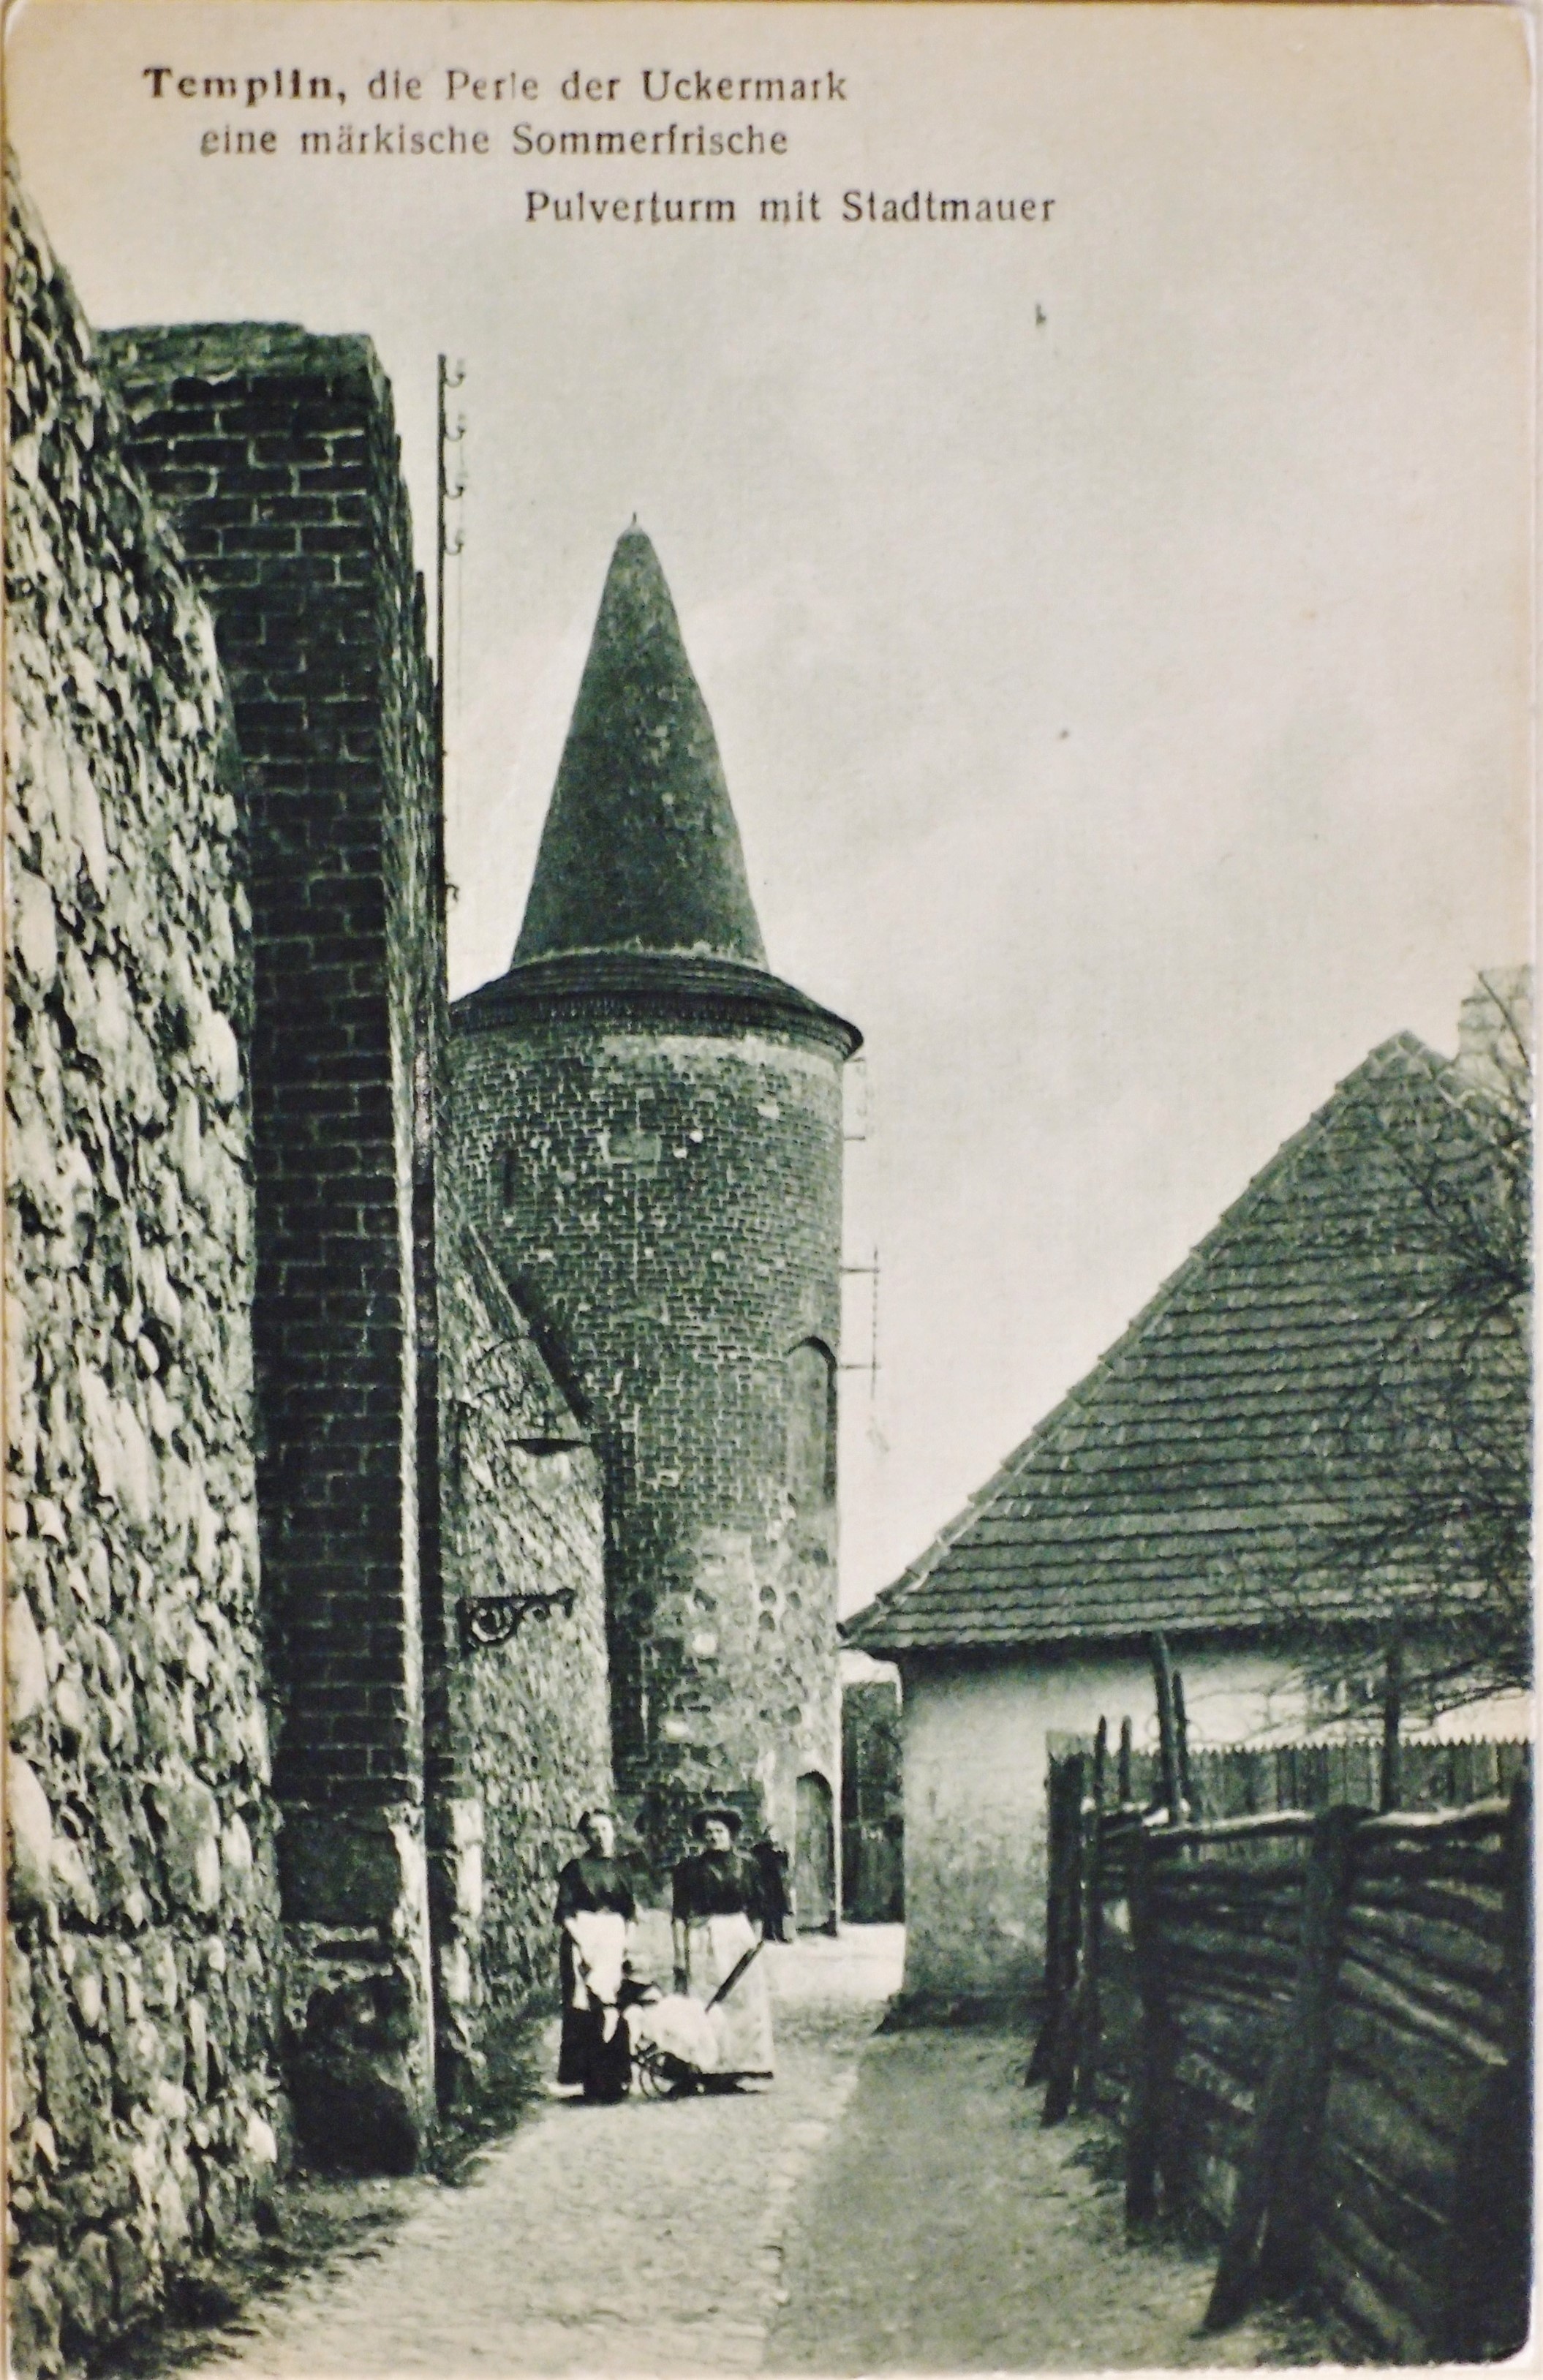 Ansichtskarte Pulverturm mit Stadtmauer in Templin (Museum für Stadtgeschichte Templin CC BY-NC-SA)